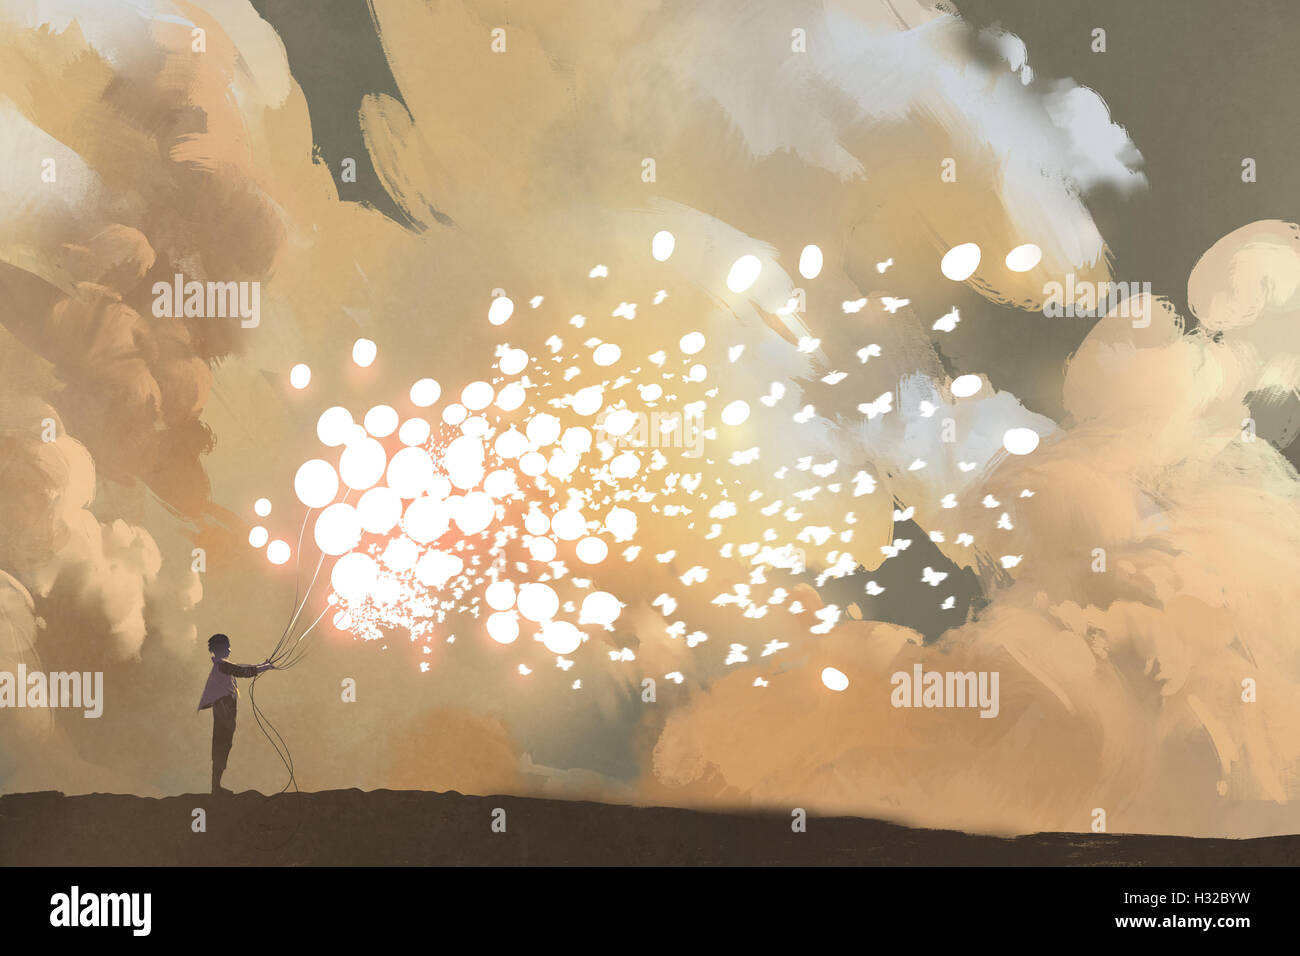 Mann loslassen, glühende Ballone und Schmetterlinge Herde in den Himmel, Illustration, Malerei Stockfoto